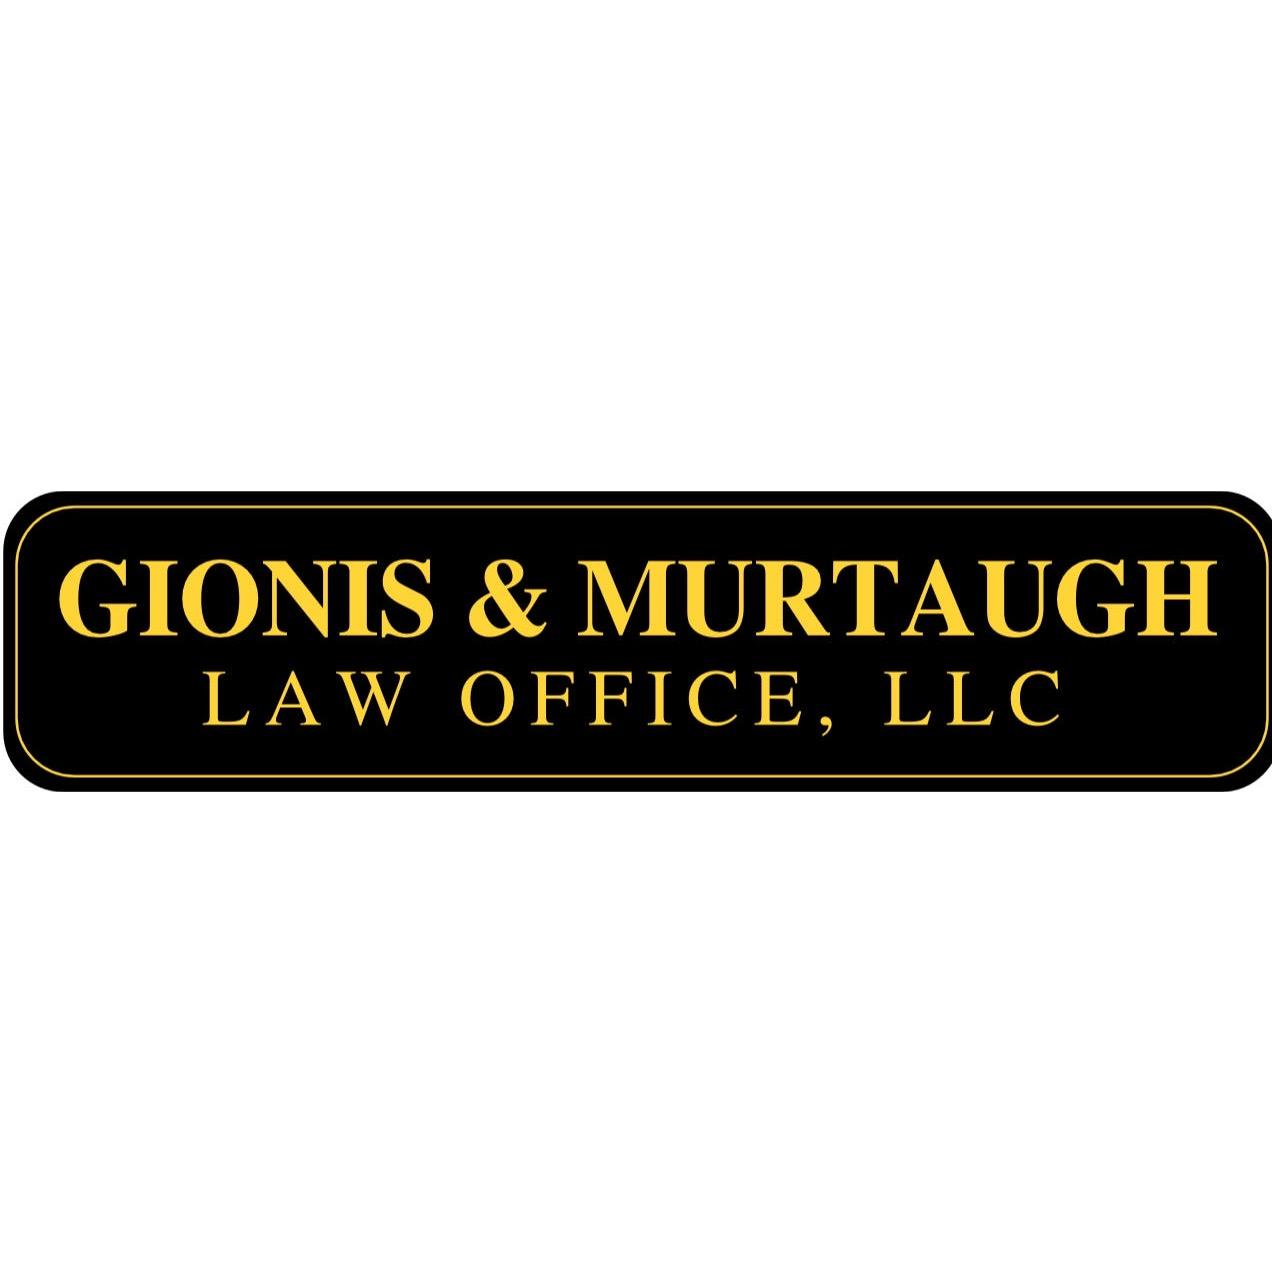 Gionis & Murtaugh Law Office, LLC 303 Polk Pkwz2y, St Croix Falls Wisconsin 54024